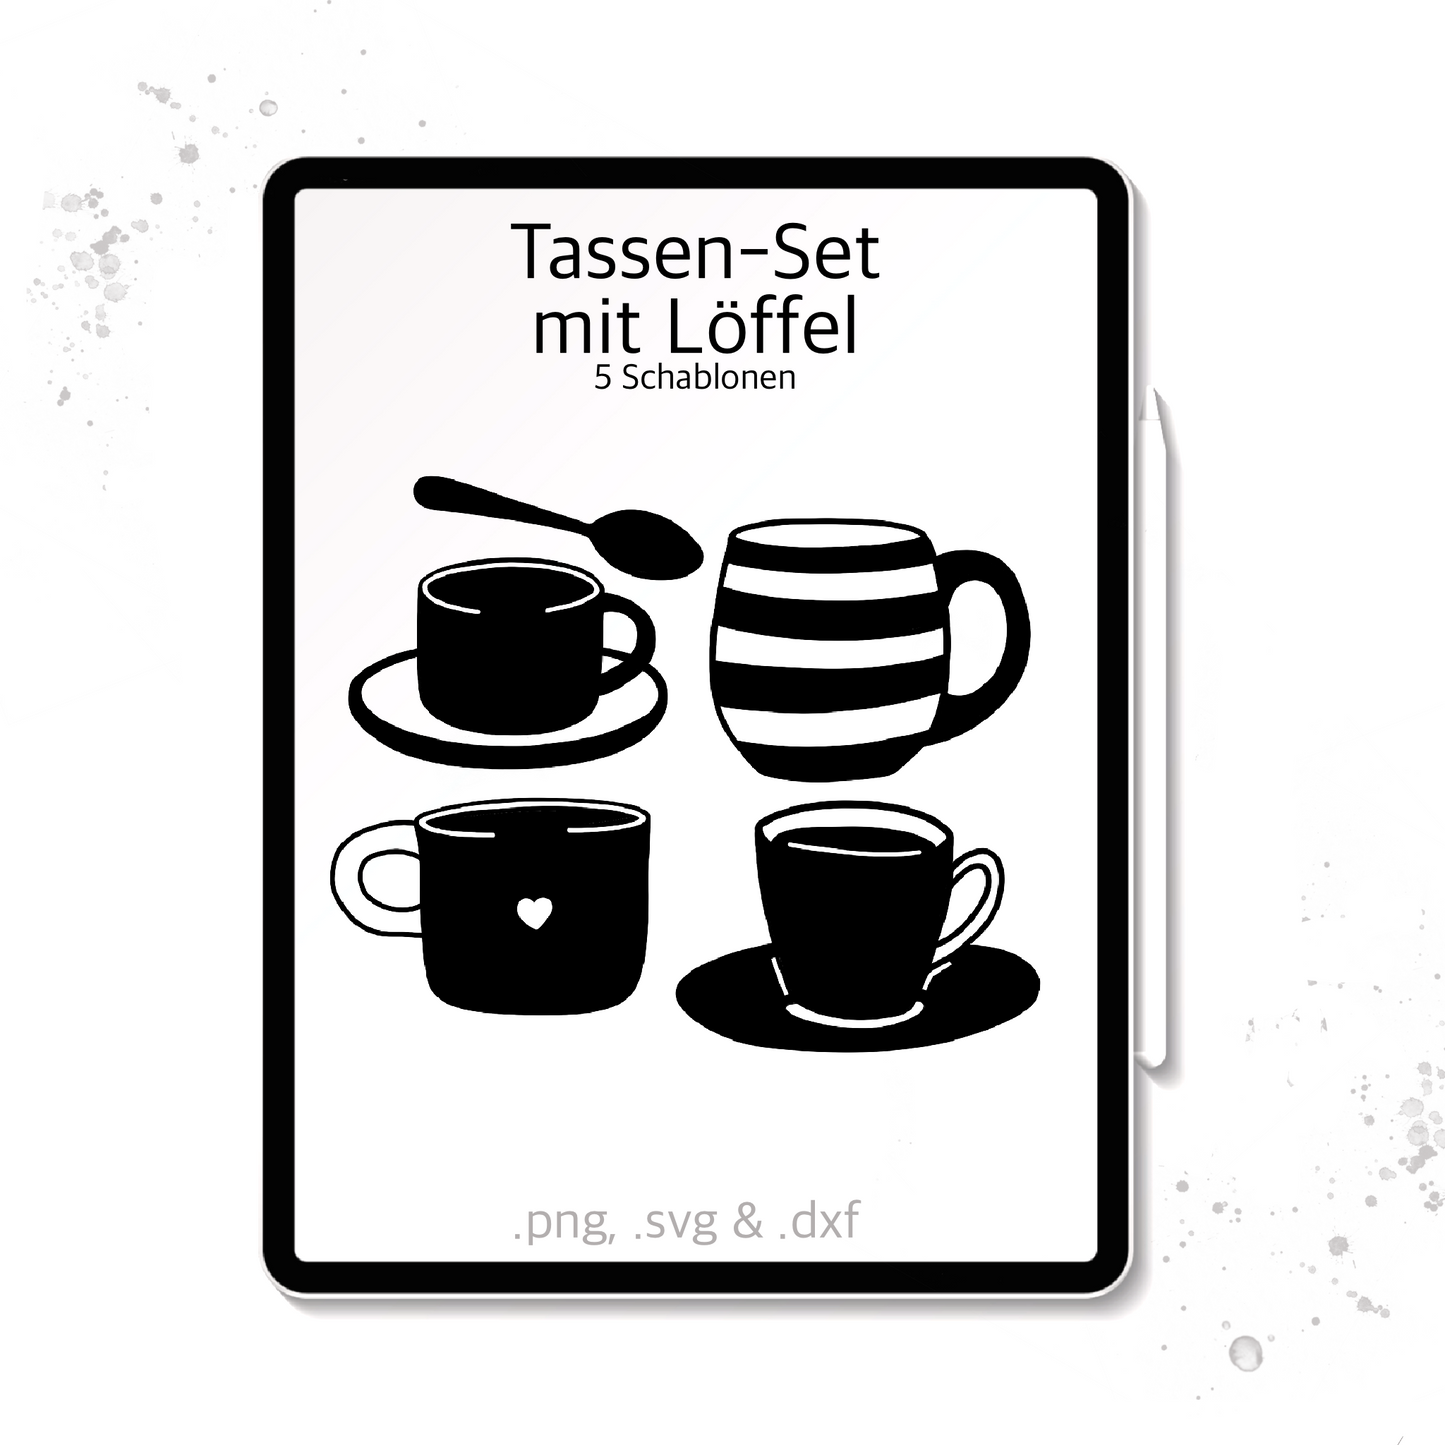 Plotterdatei / Laserdatei Schablonen "Tassen-Set" (.dxf, .svg und .png)